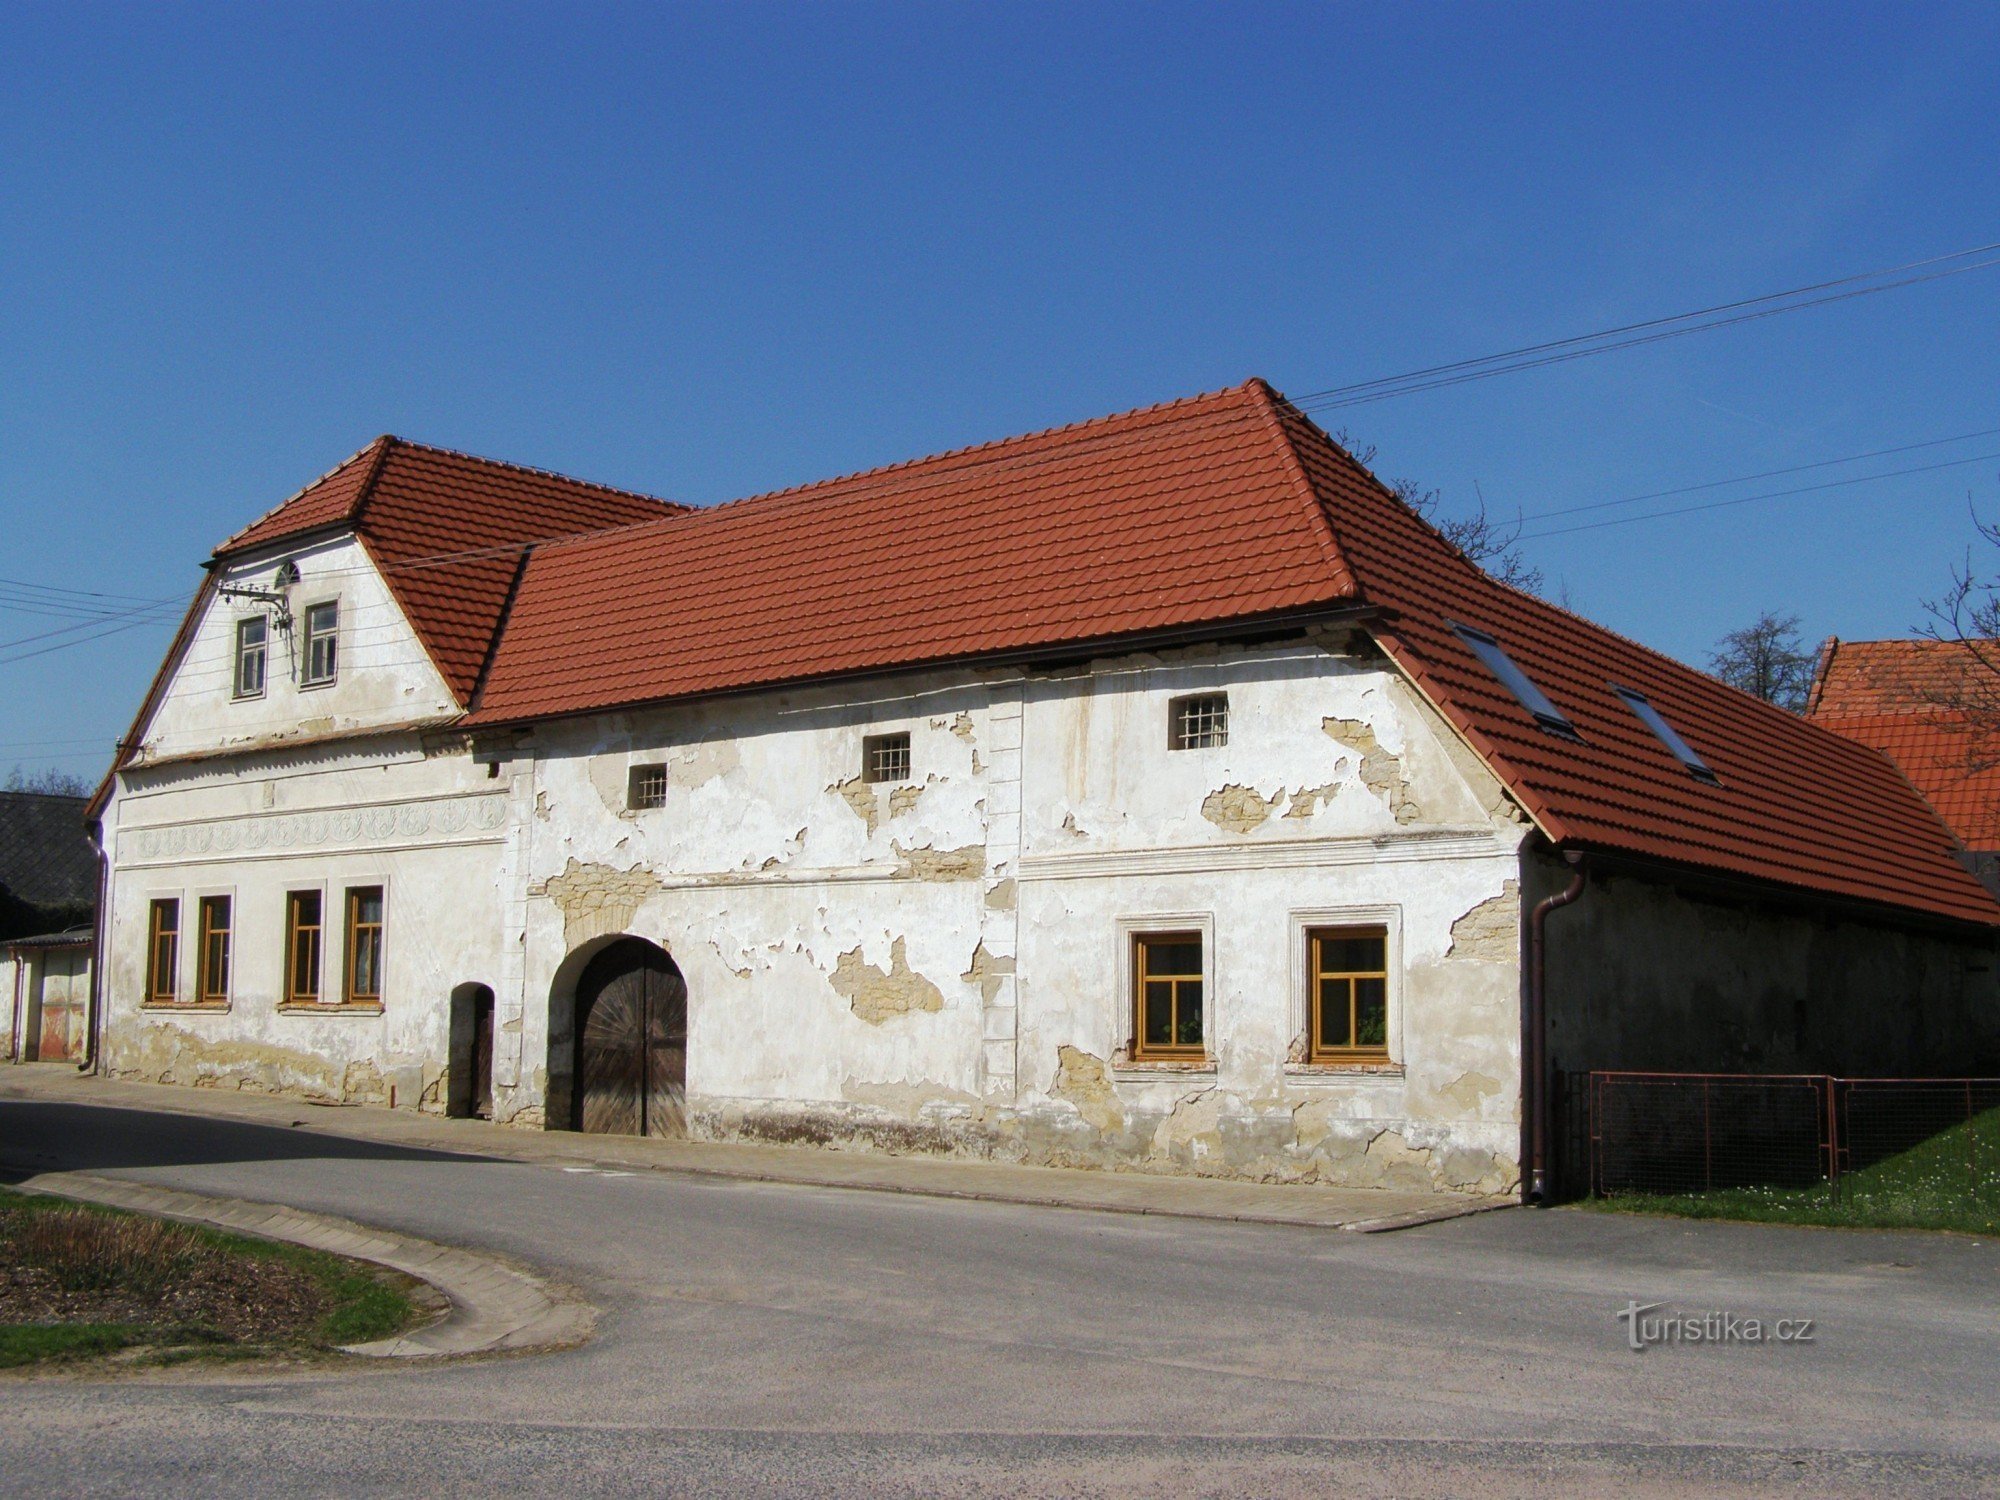 Újezdec - una vecchia fattoria